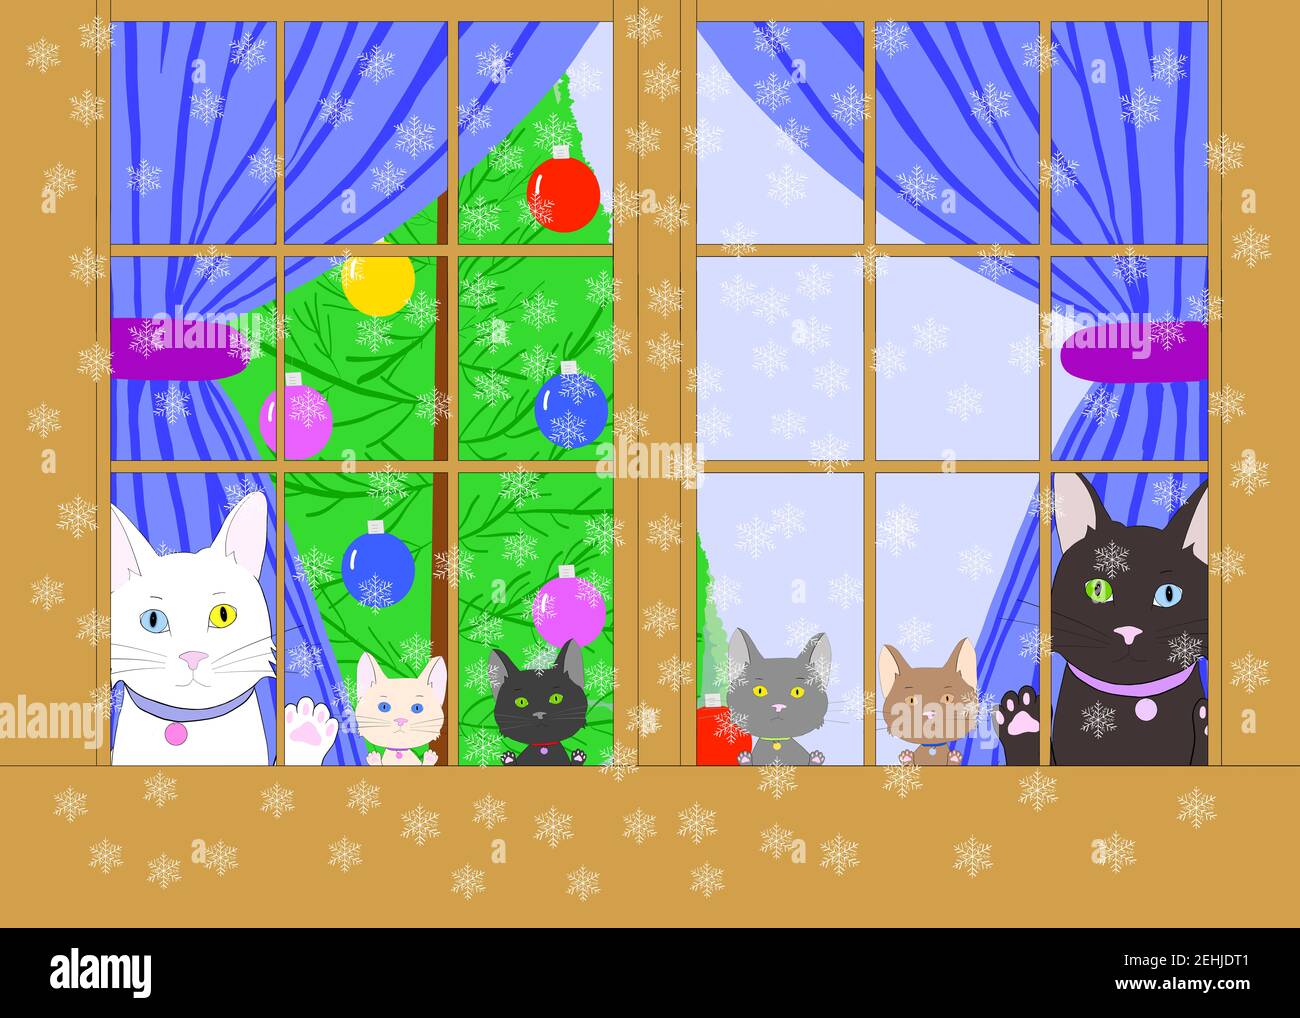 Dessin d'illustration de chats de dessins animés avec hétérochromie et divers chatons peaking dehors à travers une fenêtre de bois marron, des pattes sur le verre. Enchâlées par t Banque D'Images